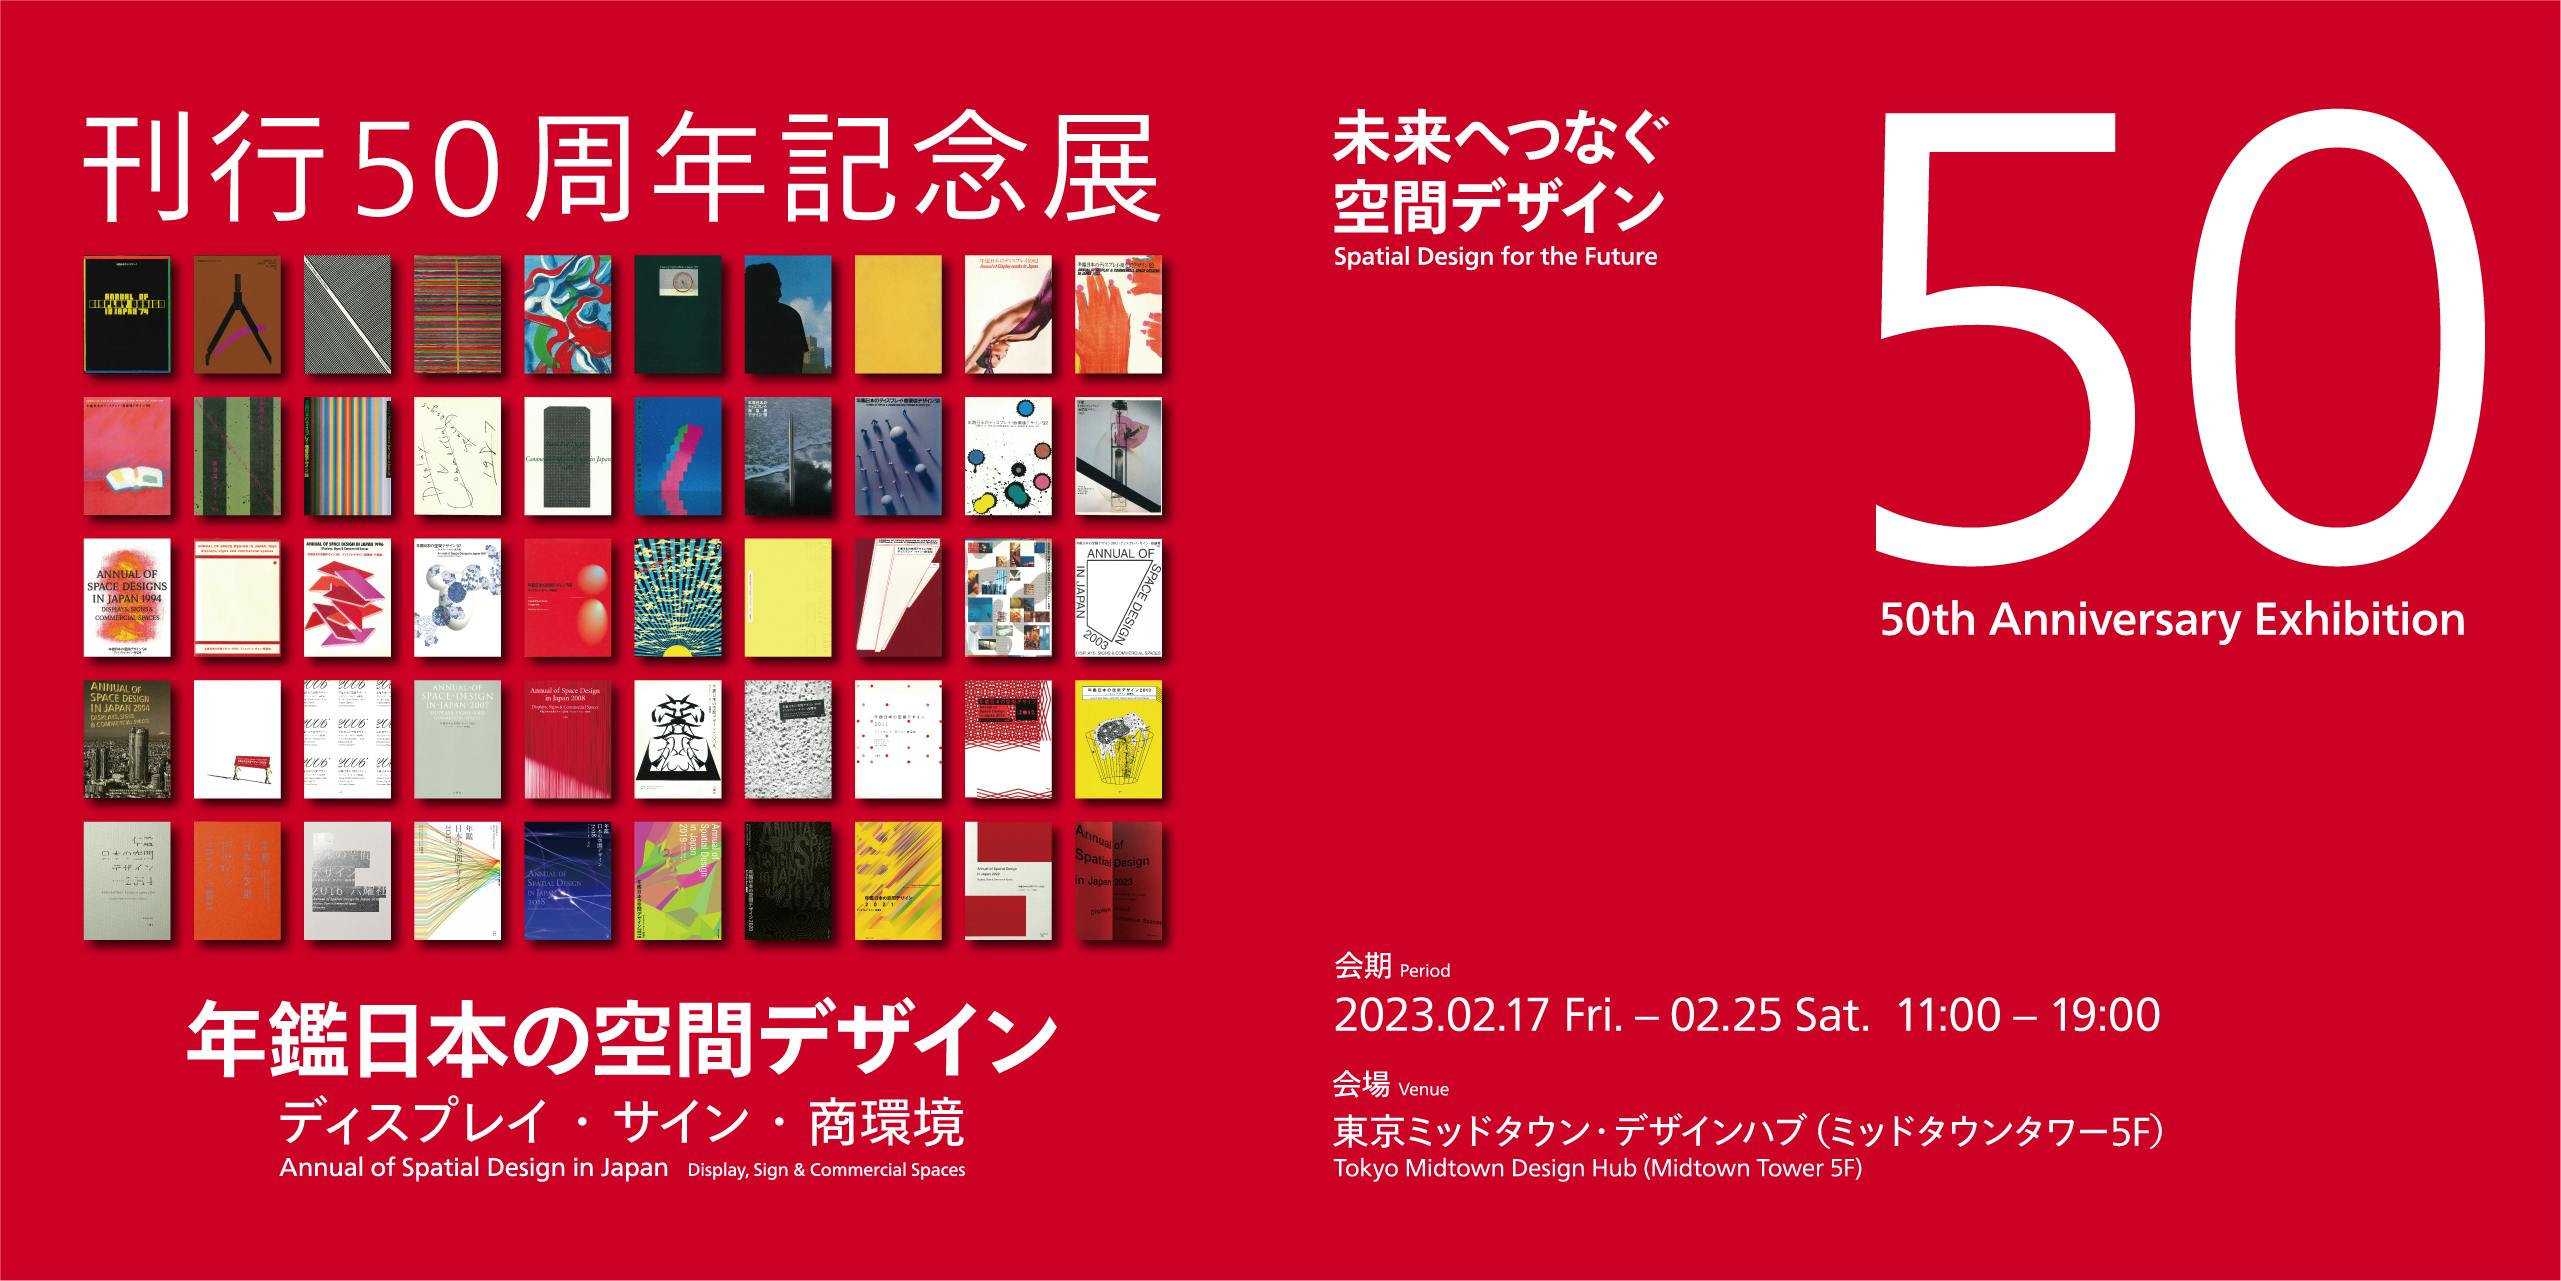 『年鑑日本の空間デザイン』刊行50周年記念展